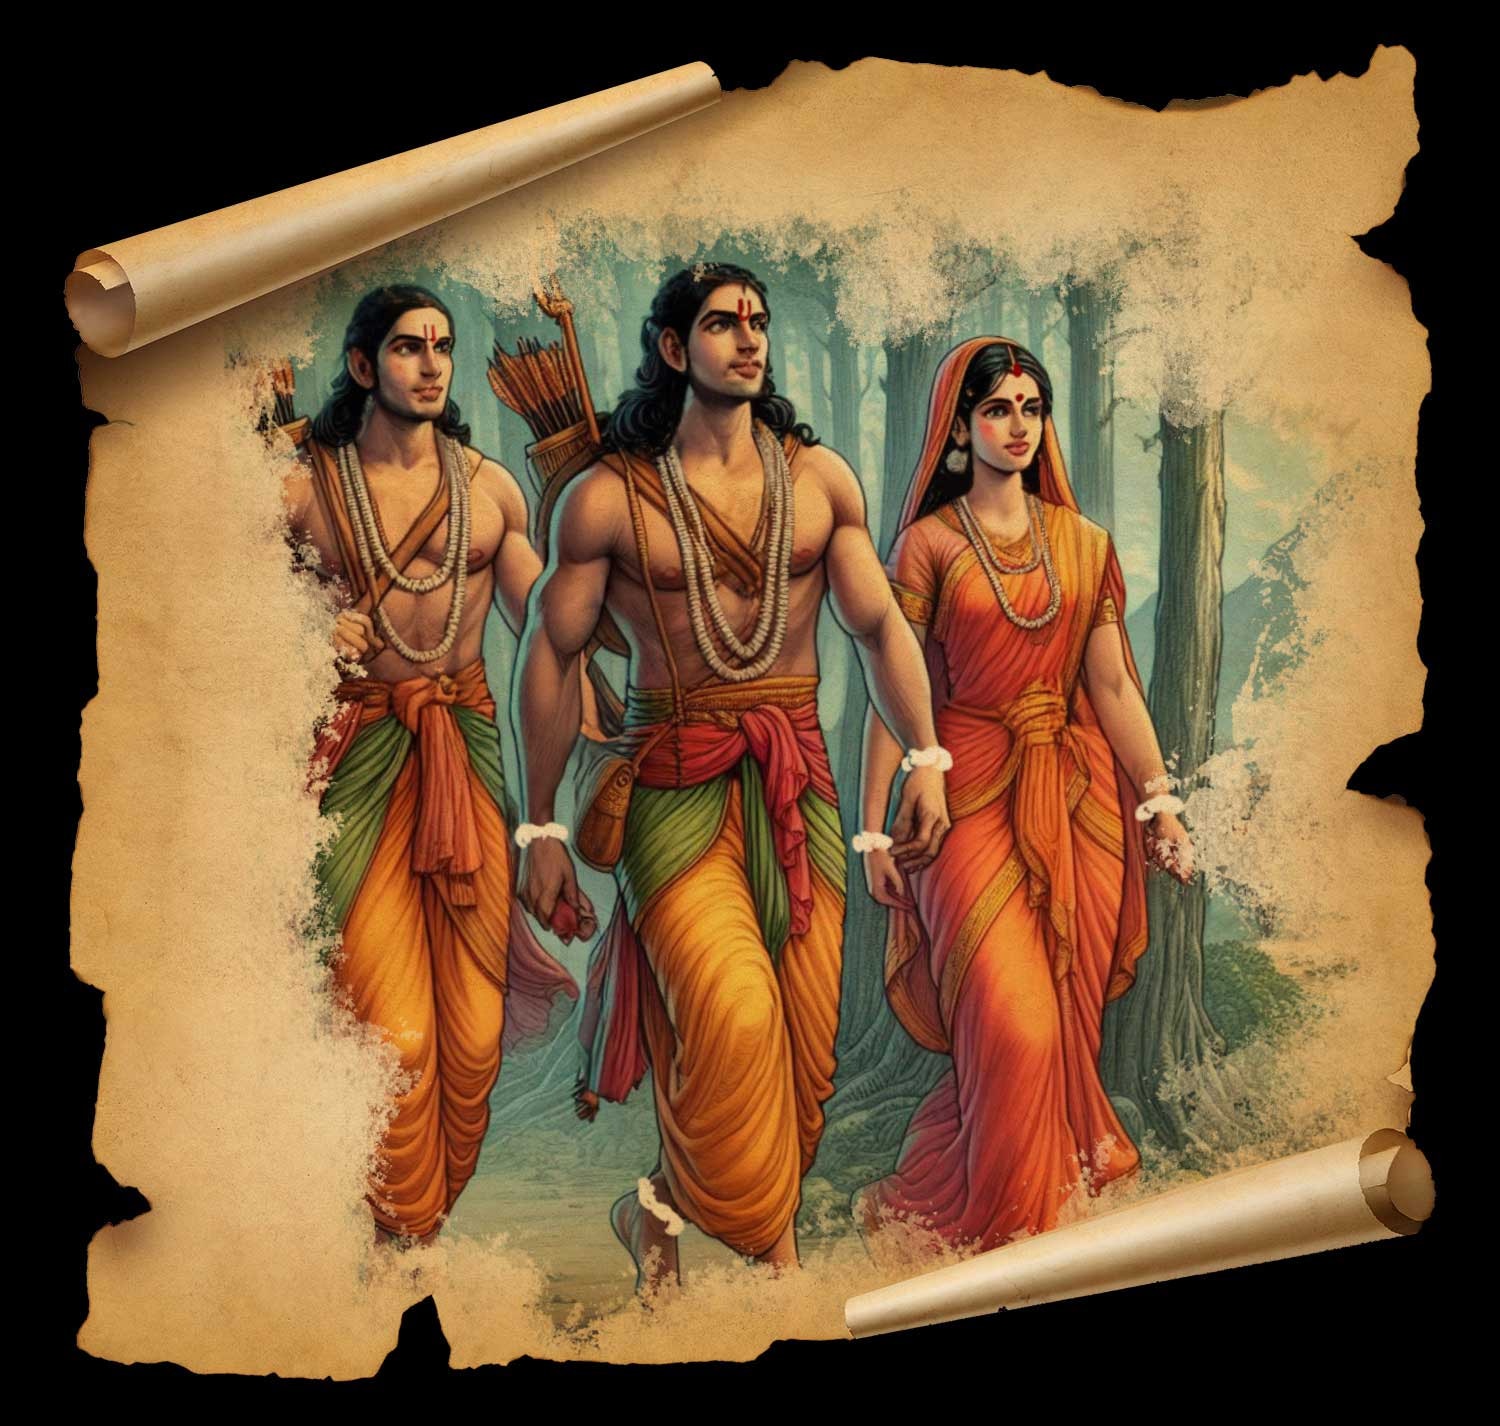 रामचरित मानस खंड-10: तपस्वी सा वेश, कमर में तरकस… वन में श्रीराम, सीताजी और लक्ष्मण का पहला दिन